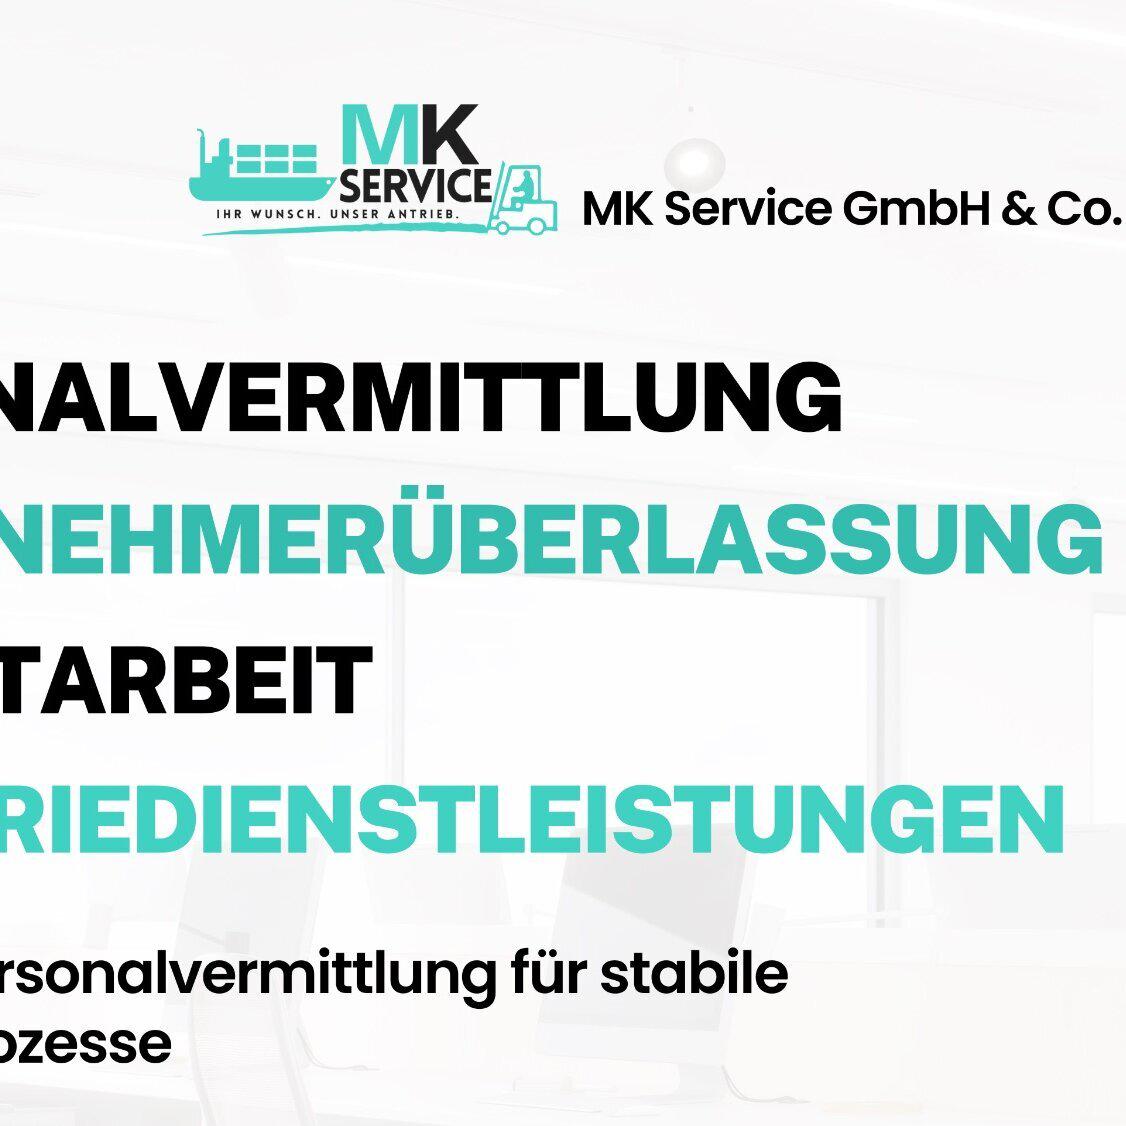 Bilder MK Service GmbH & Co. KG